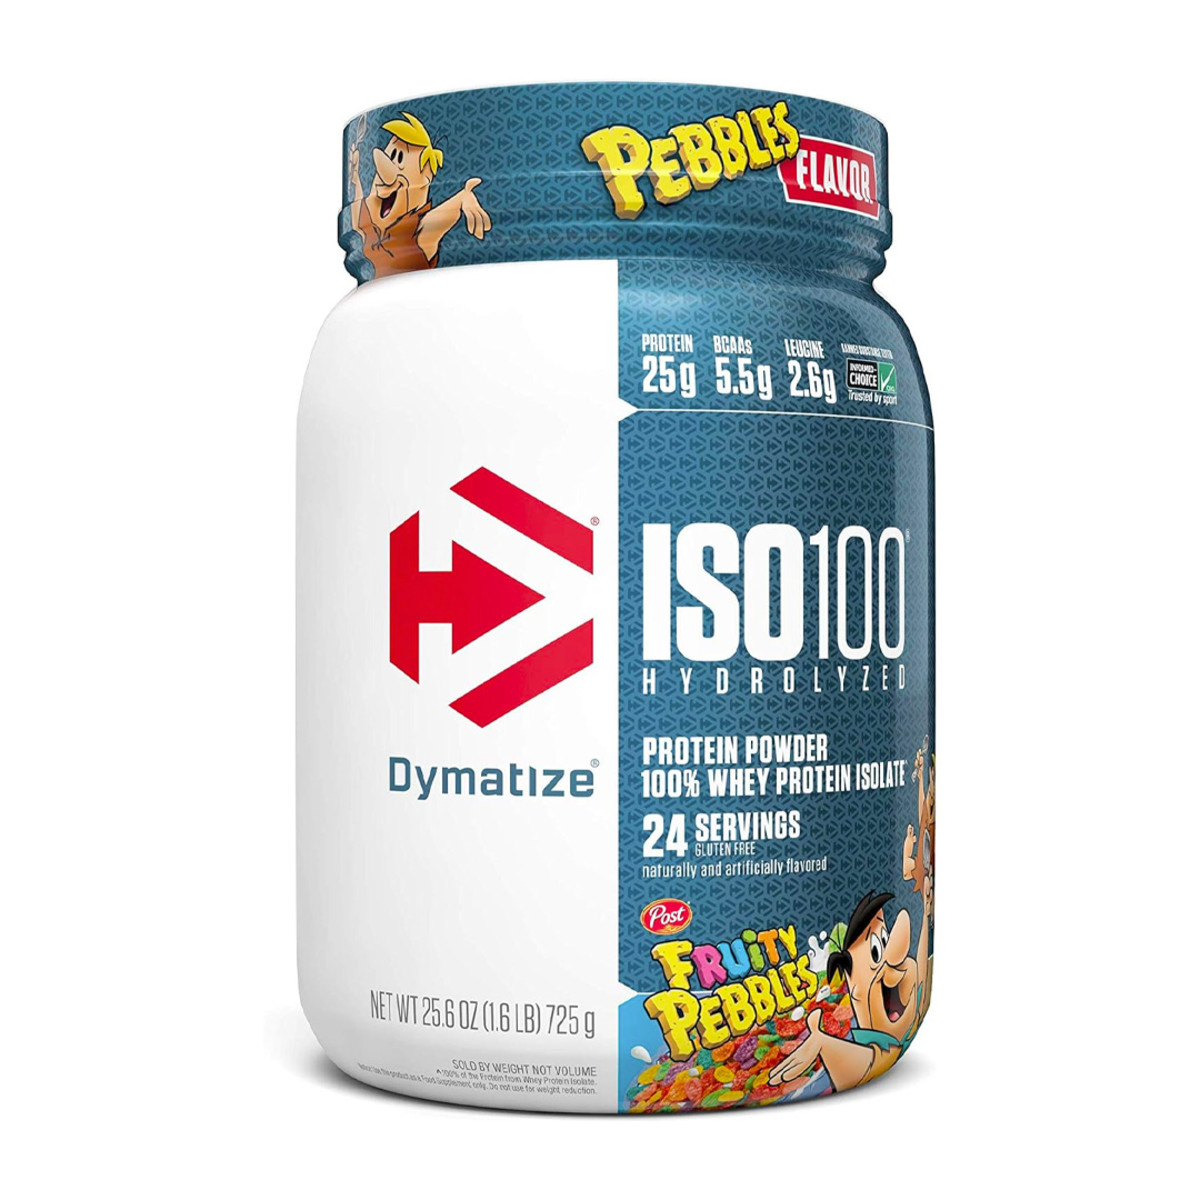 https://www.mensjournal.com/.image/t_share/MjAyNzczMDMwNjg1MDU4MTE2/dymatize-iso100-hydrolyzed-whey-protein-gift.jpg